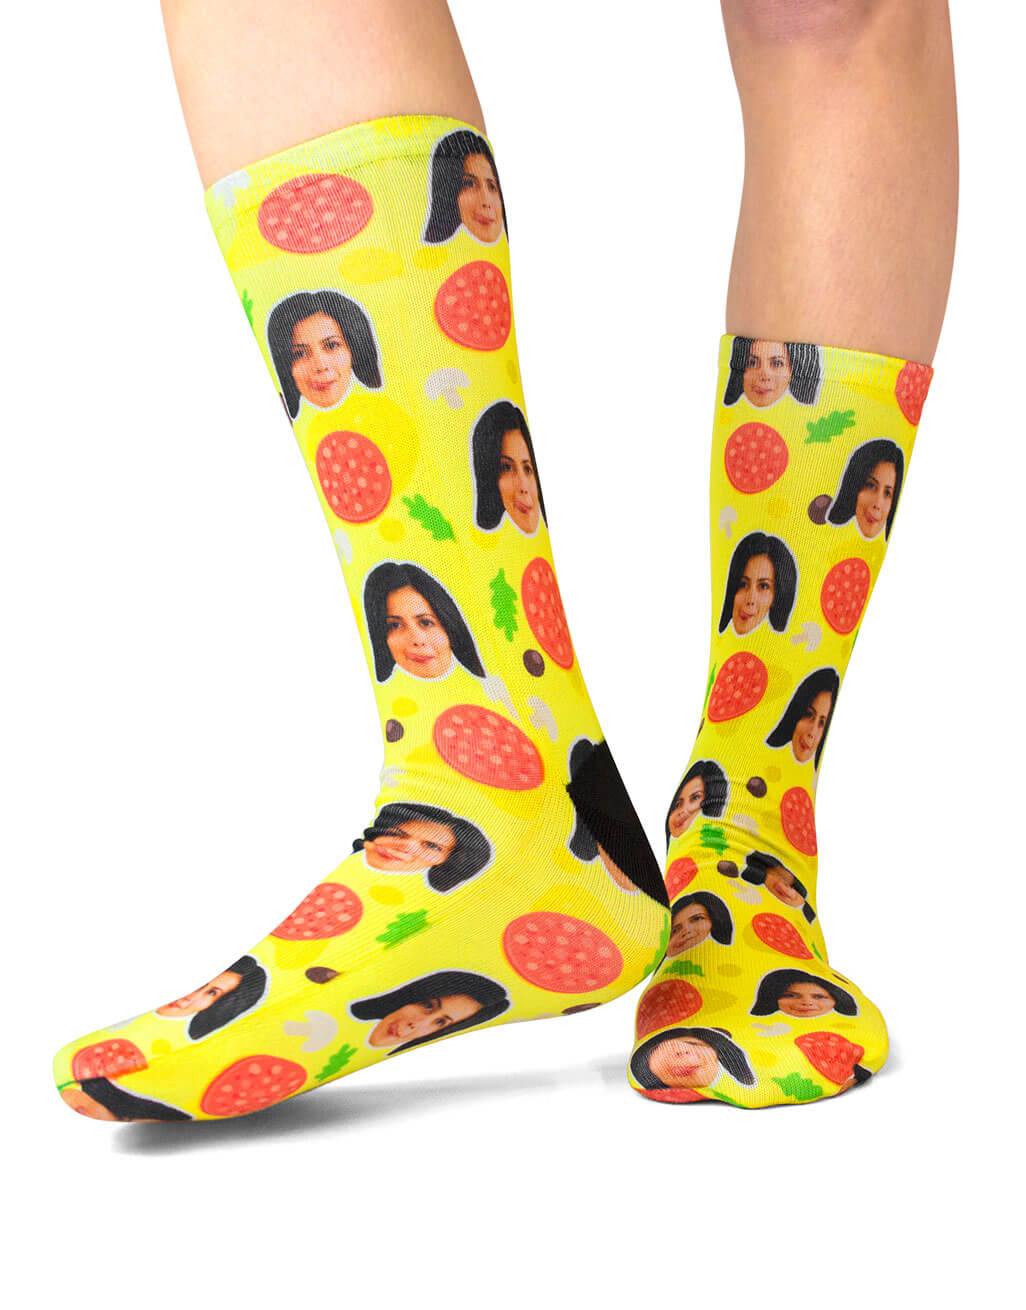 PepperoME Custom Socks